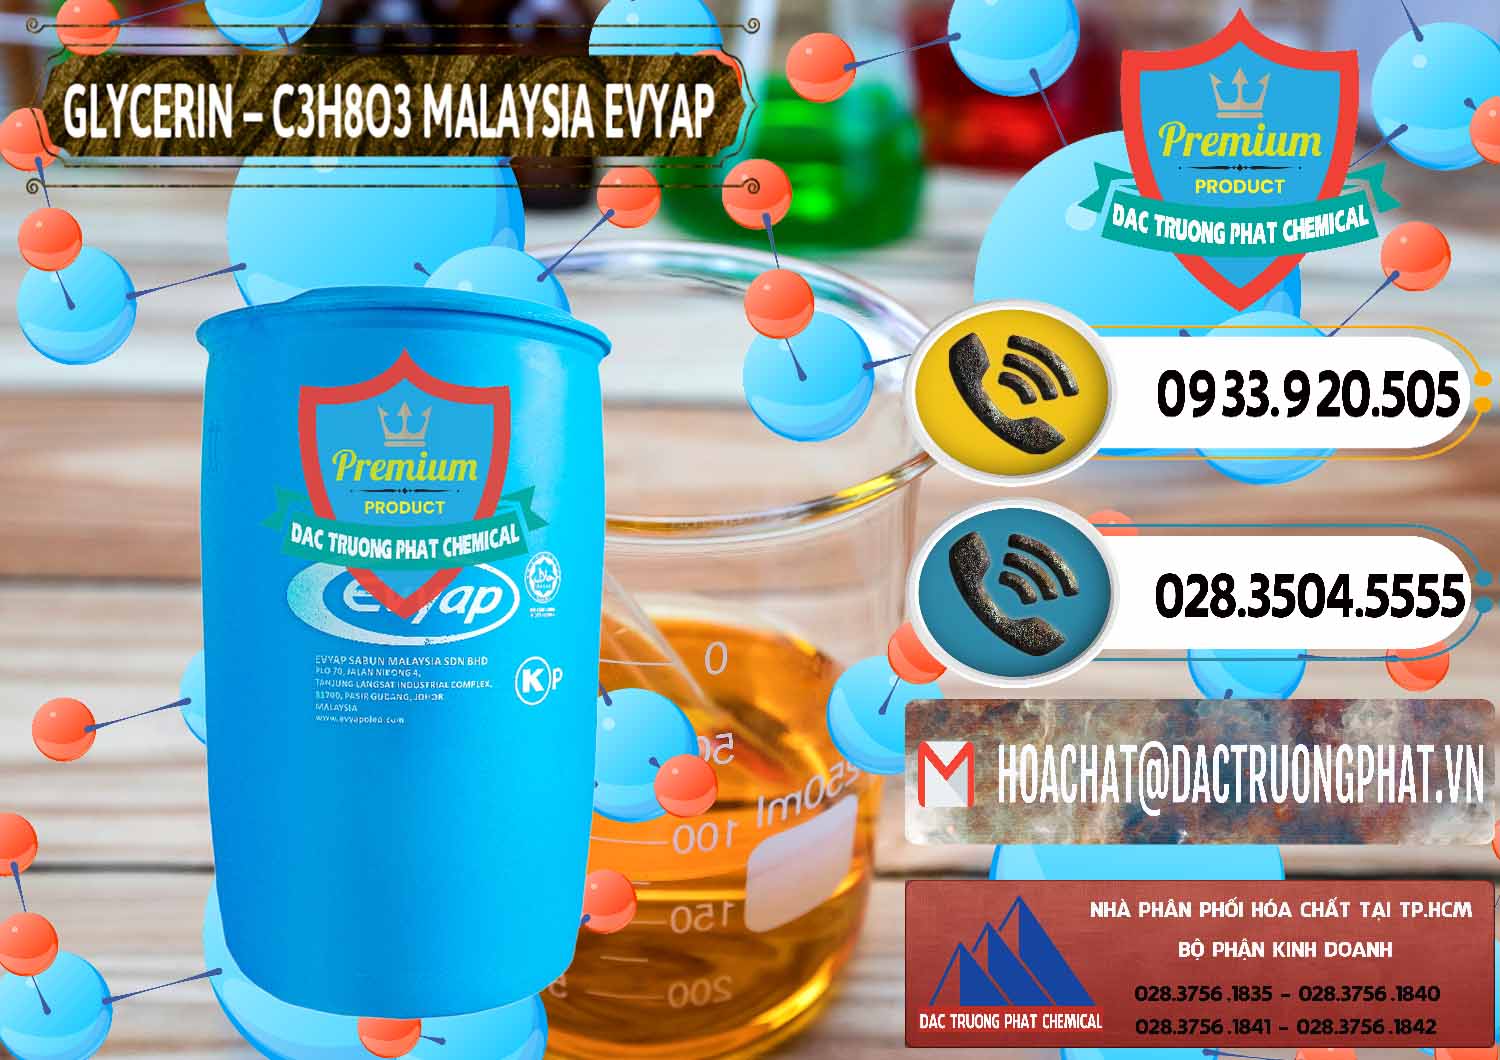 Công ty nhập khẩu & bán Glycerin – C3H8O3 Malaysia Evyap - 0066 - Nhập khẩu _ cung cấp hóa chất tại TP.HCM - hoachatdetnhuom.vn